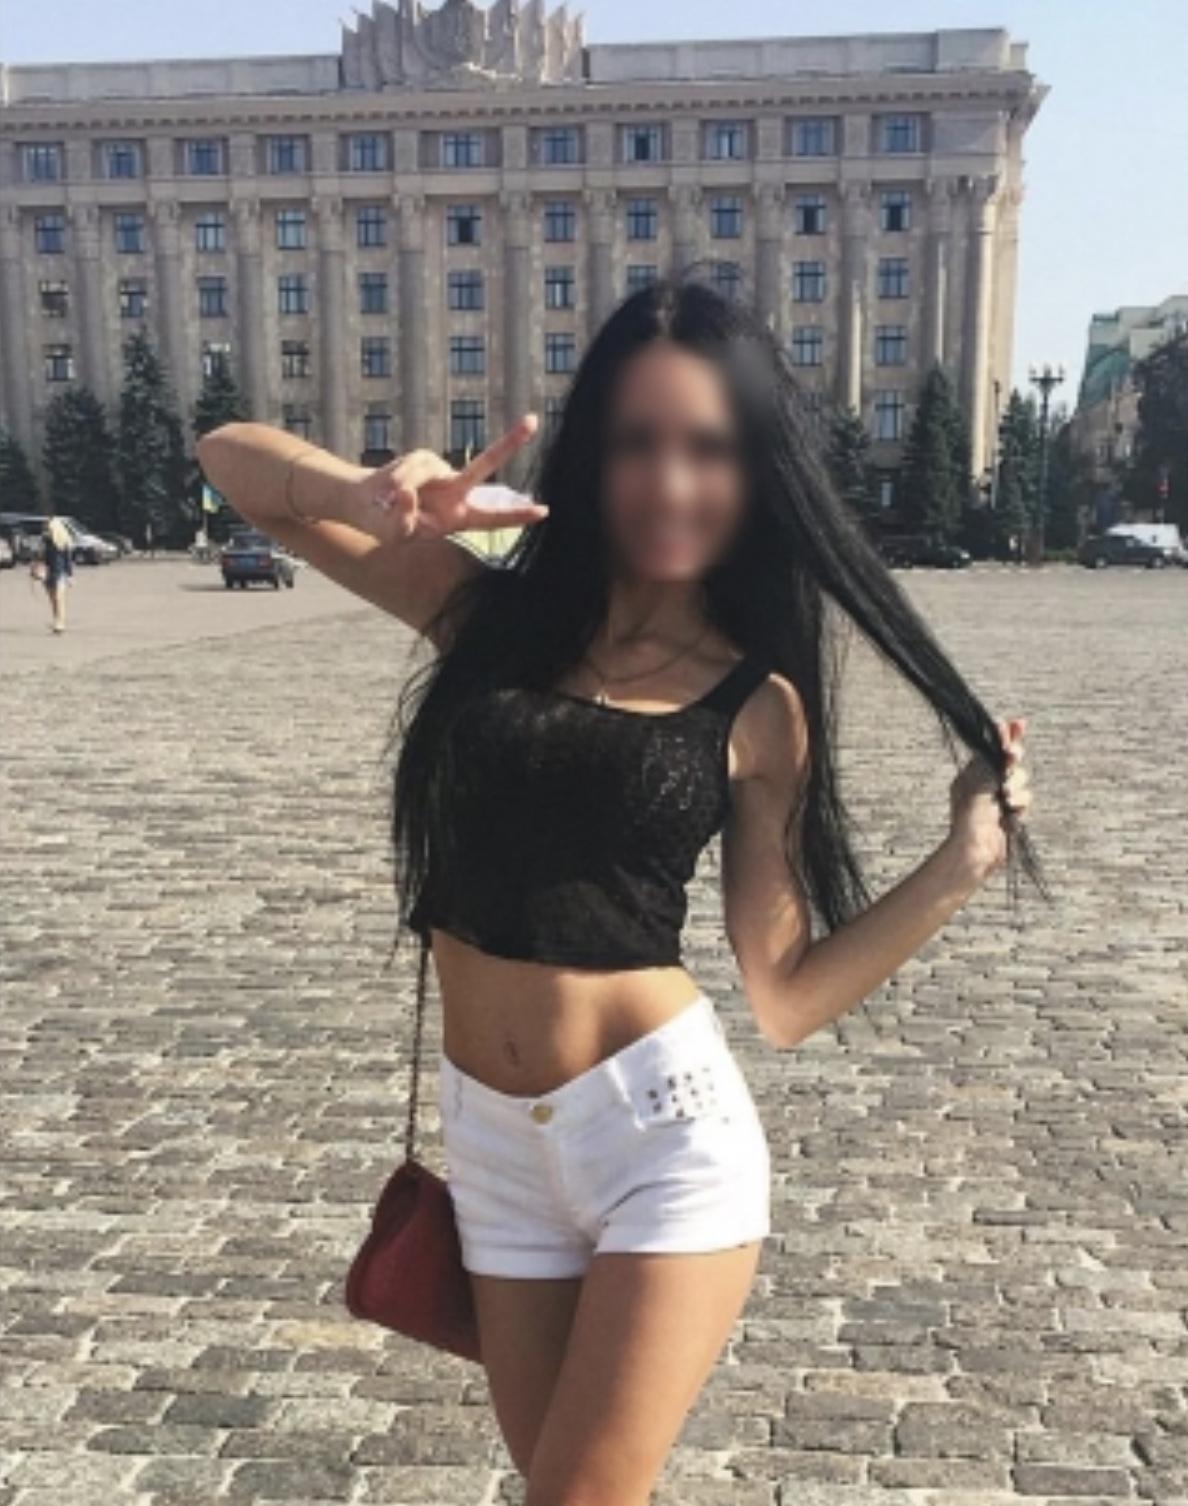 Проститутка Машенька, фото 1, тел: 0668273342. В центре города - Киев